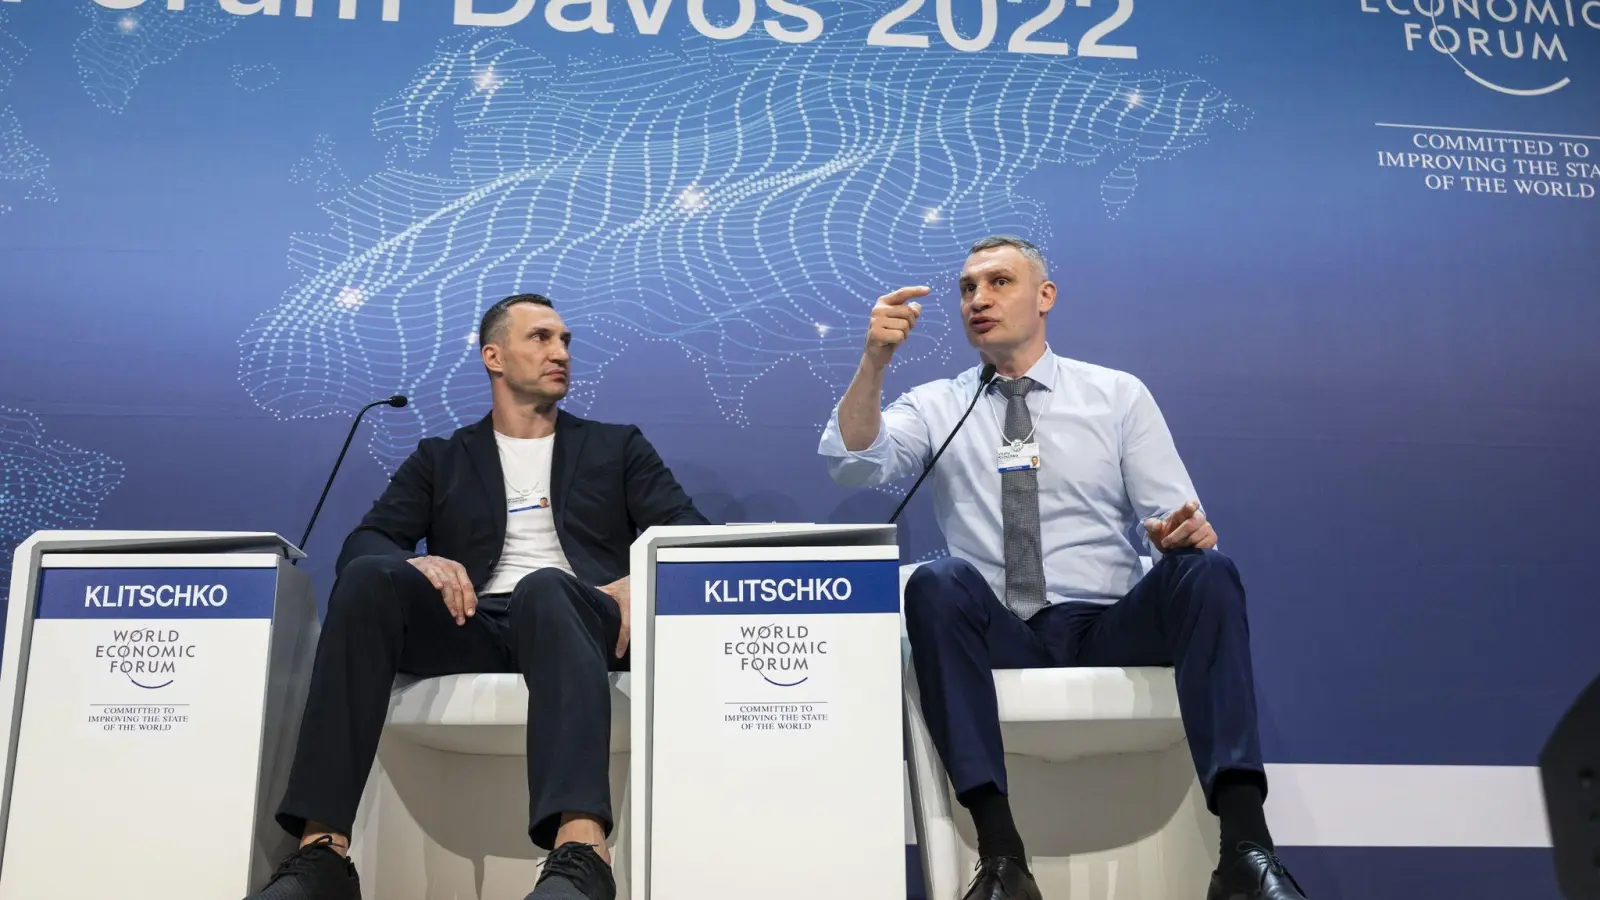 Die Brüder Wladimir (l) und Vitali Klitschko, der Bürgermeister von Kiew ist, sprechen bei einer Podiumsdiskussion während des 51. Jahrestreffens des Weltwirtschaftsforums in Davos. Sie forderten dort schärfere Maßnahmen gegen Russland. (Foto: Laurent Gillieron/KEYSTONE/dpa)